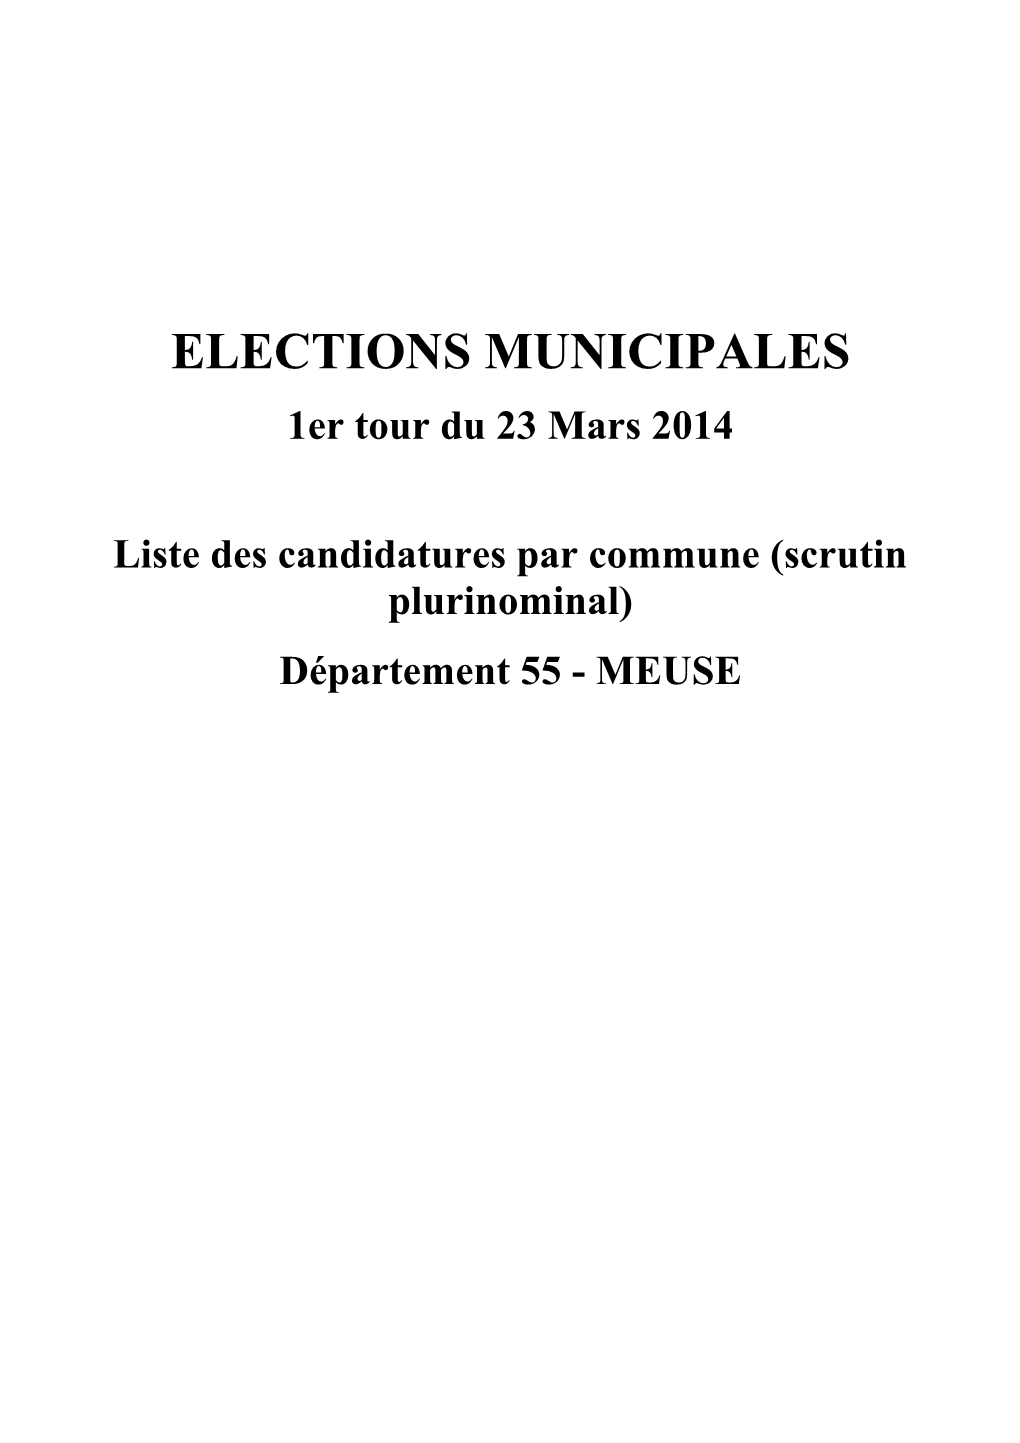 ELECTIONS MUNICIPALES 1Er Tour Du 23 Mars 2014